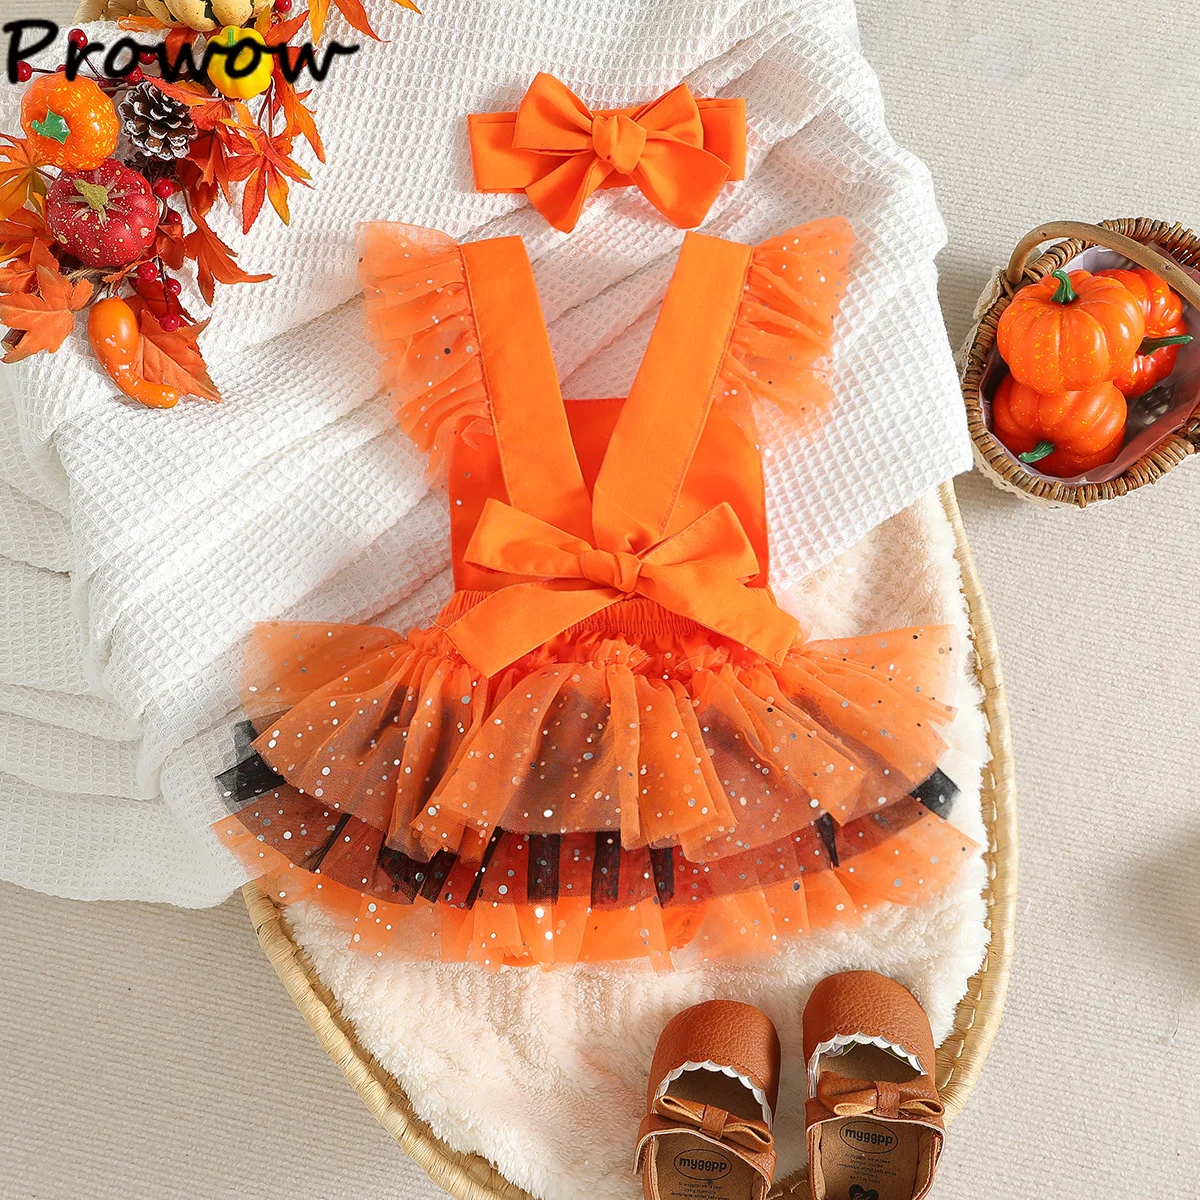 Prowow 0-18 м, детский комбинезон на Хэллоуин, Оранжевое боди для новорожденных, платья принцессы Тыквы, мой первый детский костюм на Хэллоуин Изображение 2